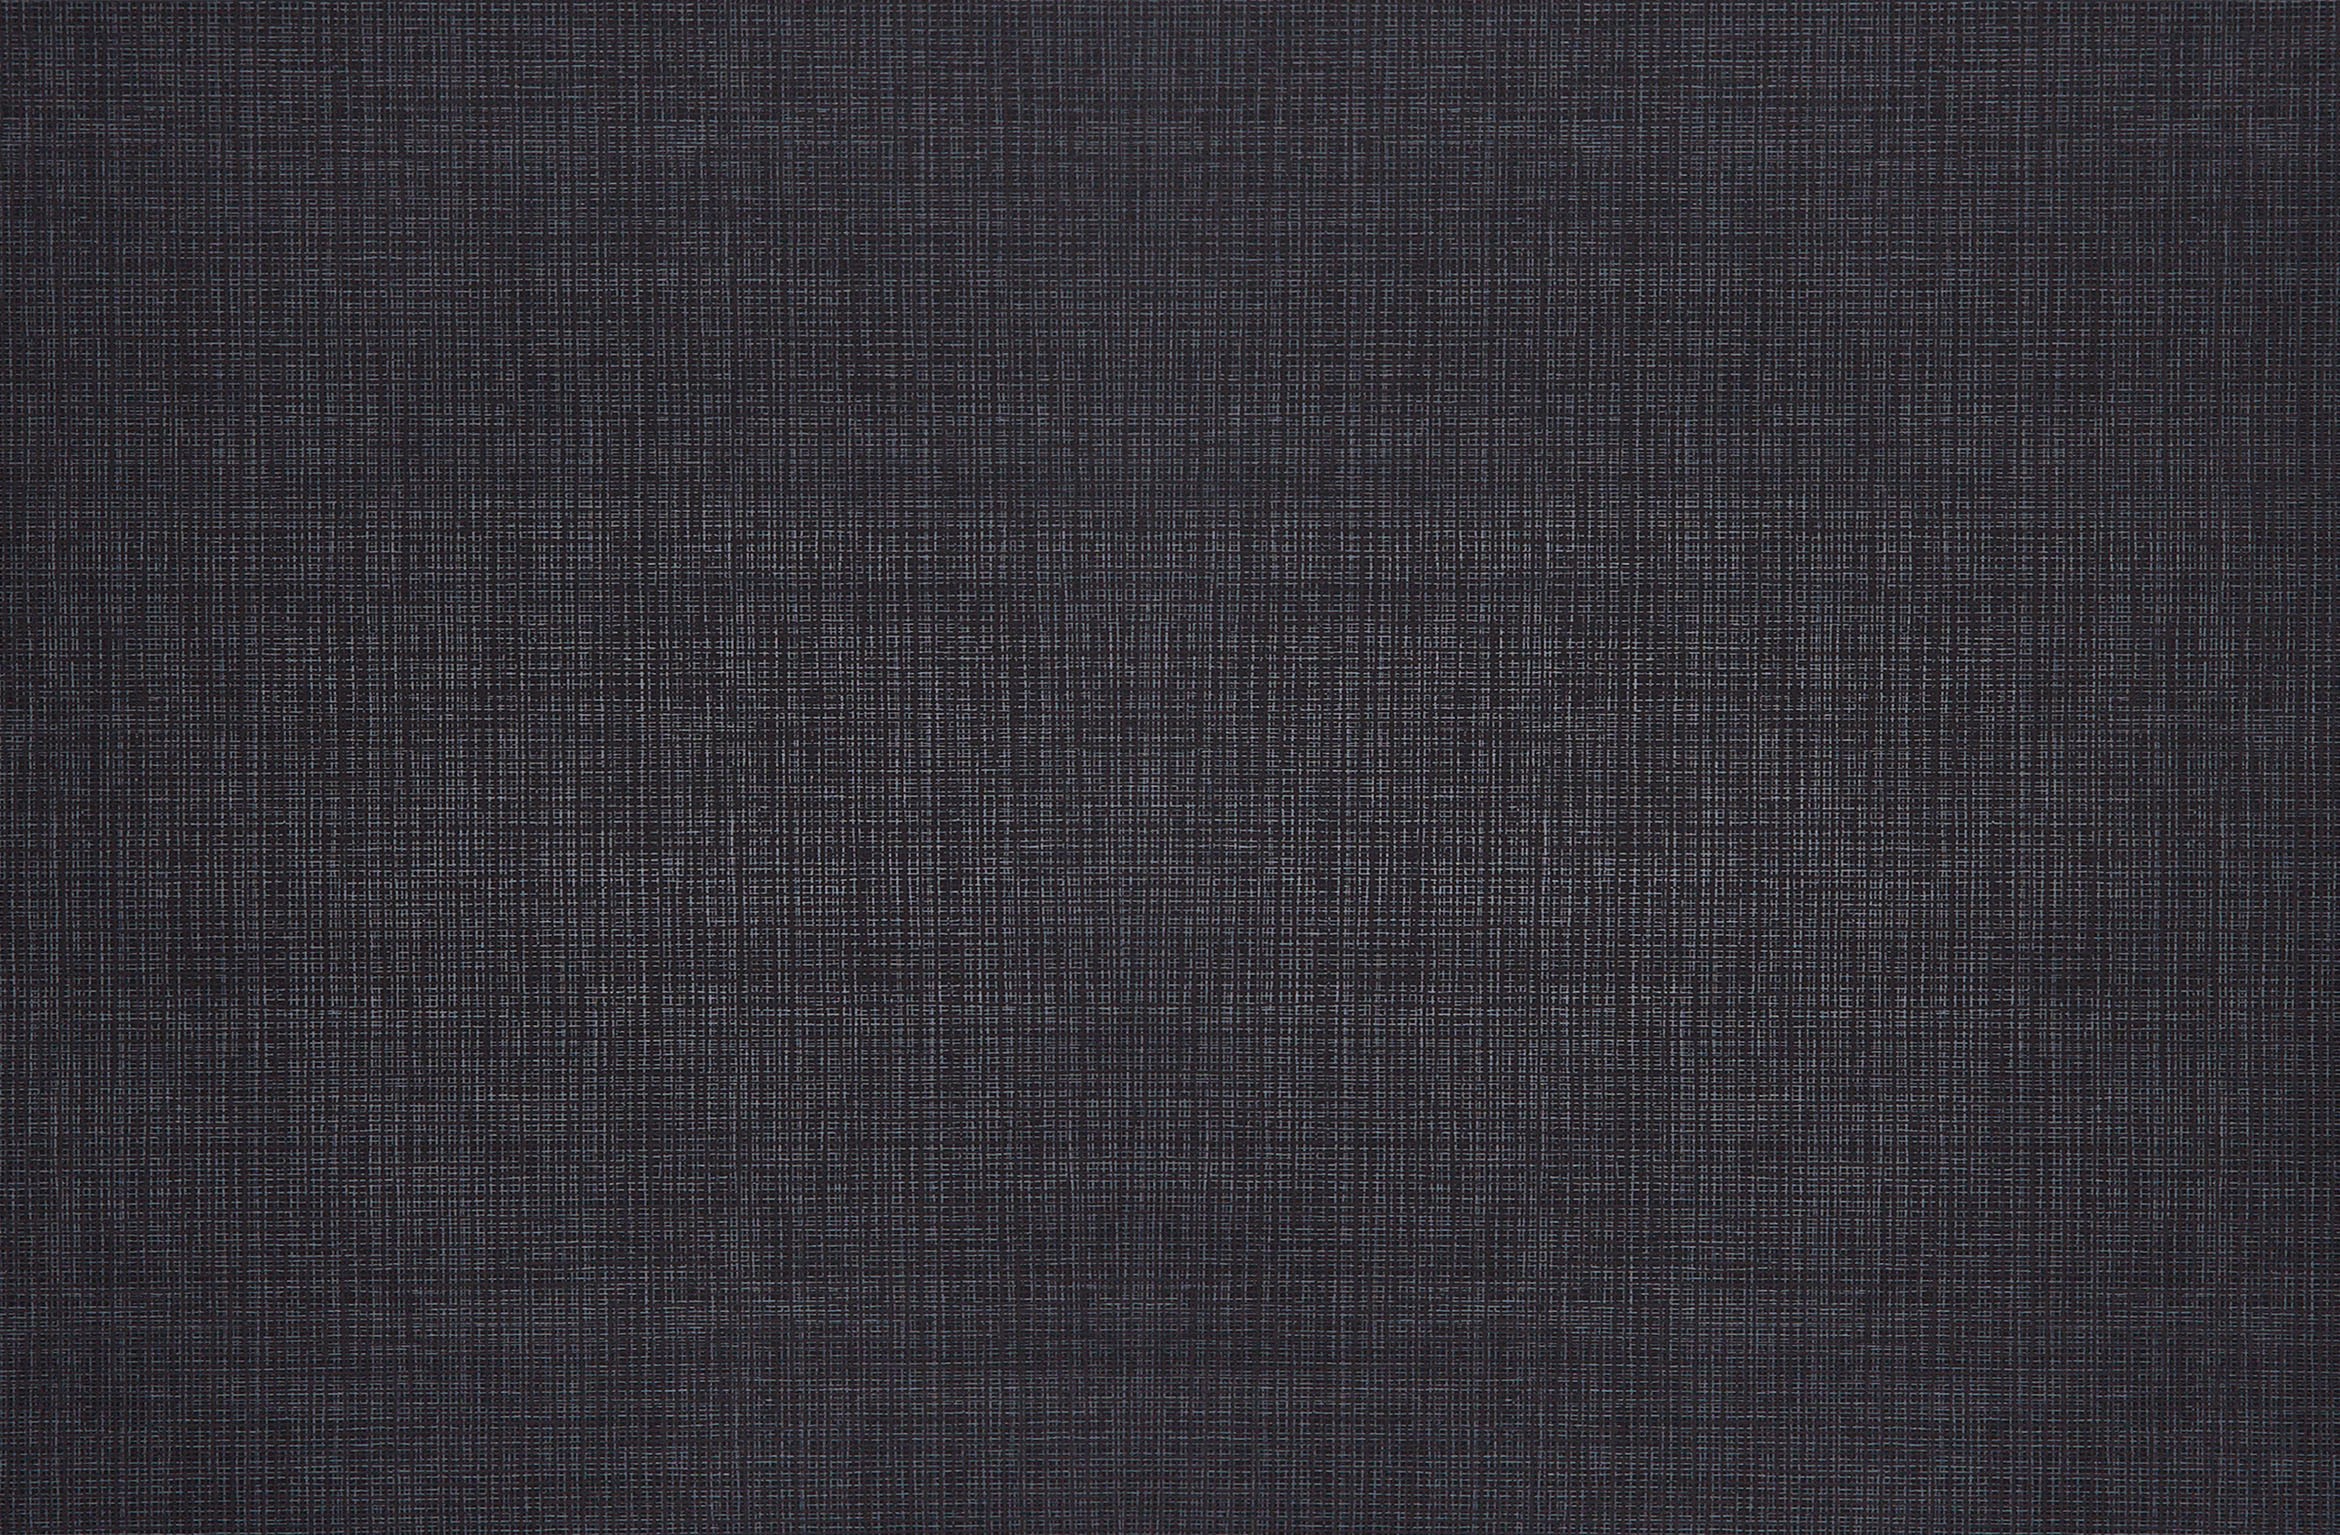 Linen texture wallpaper